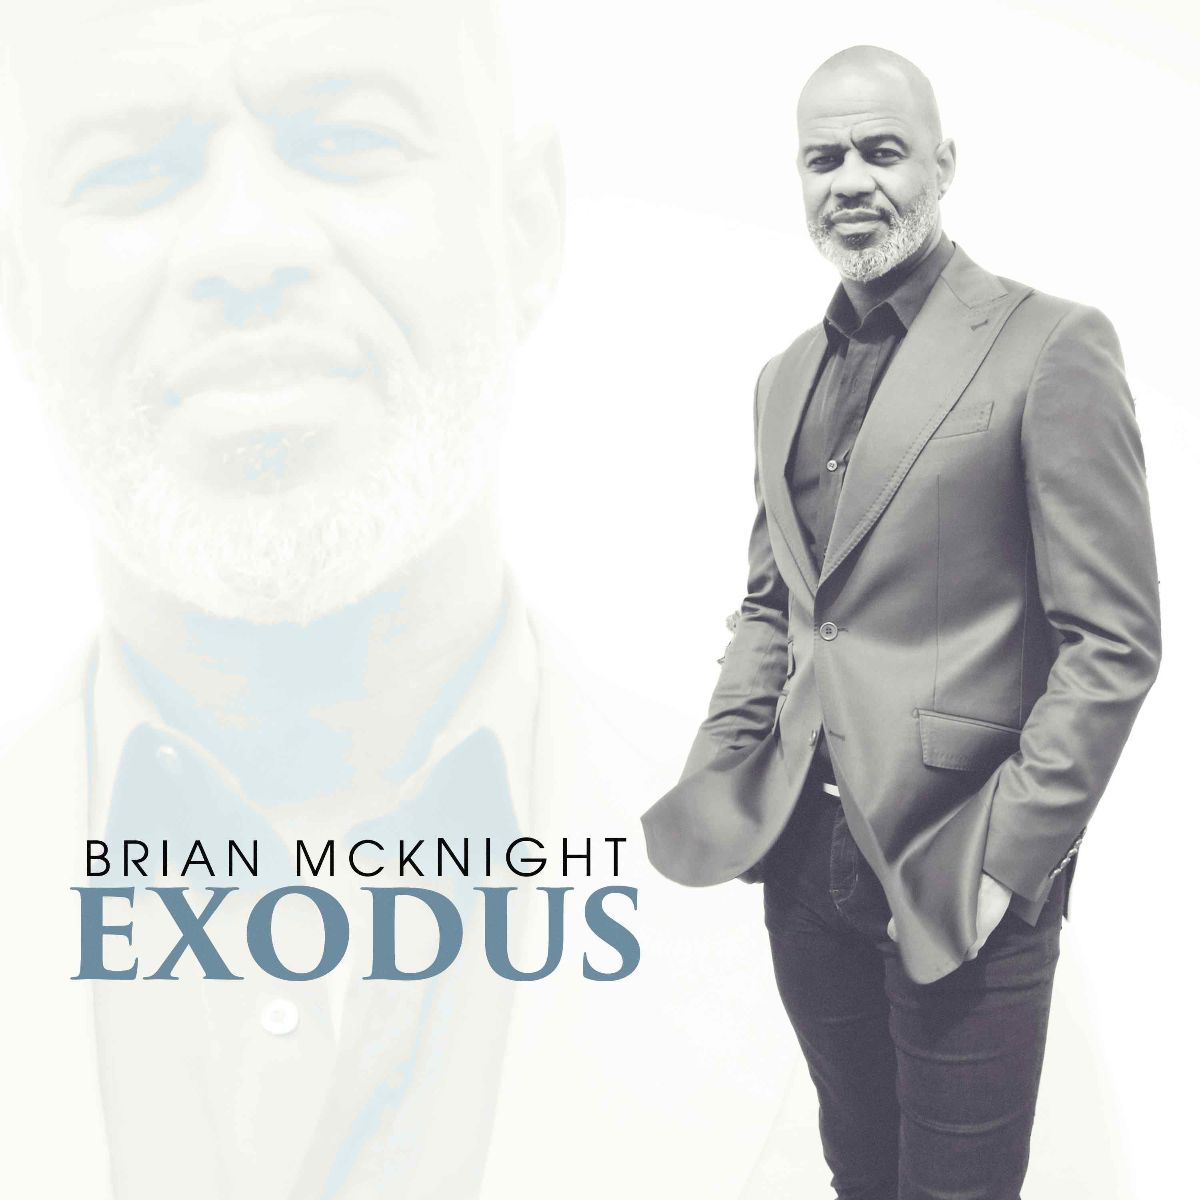 Brian McKnight Releases Final Album "Exodus"